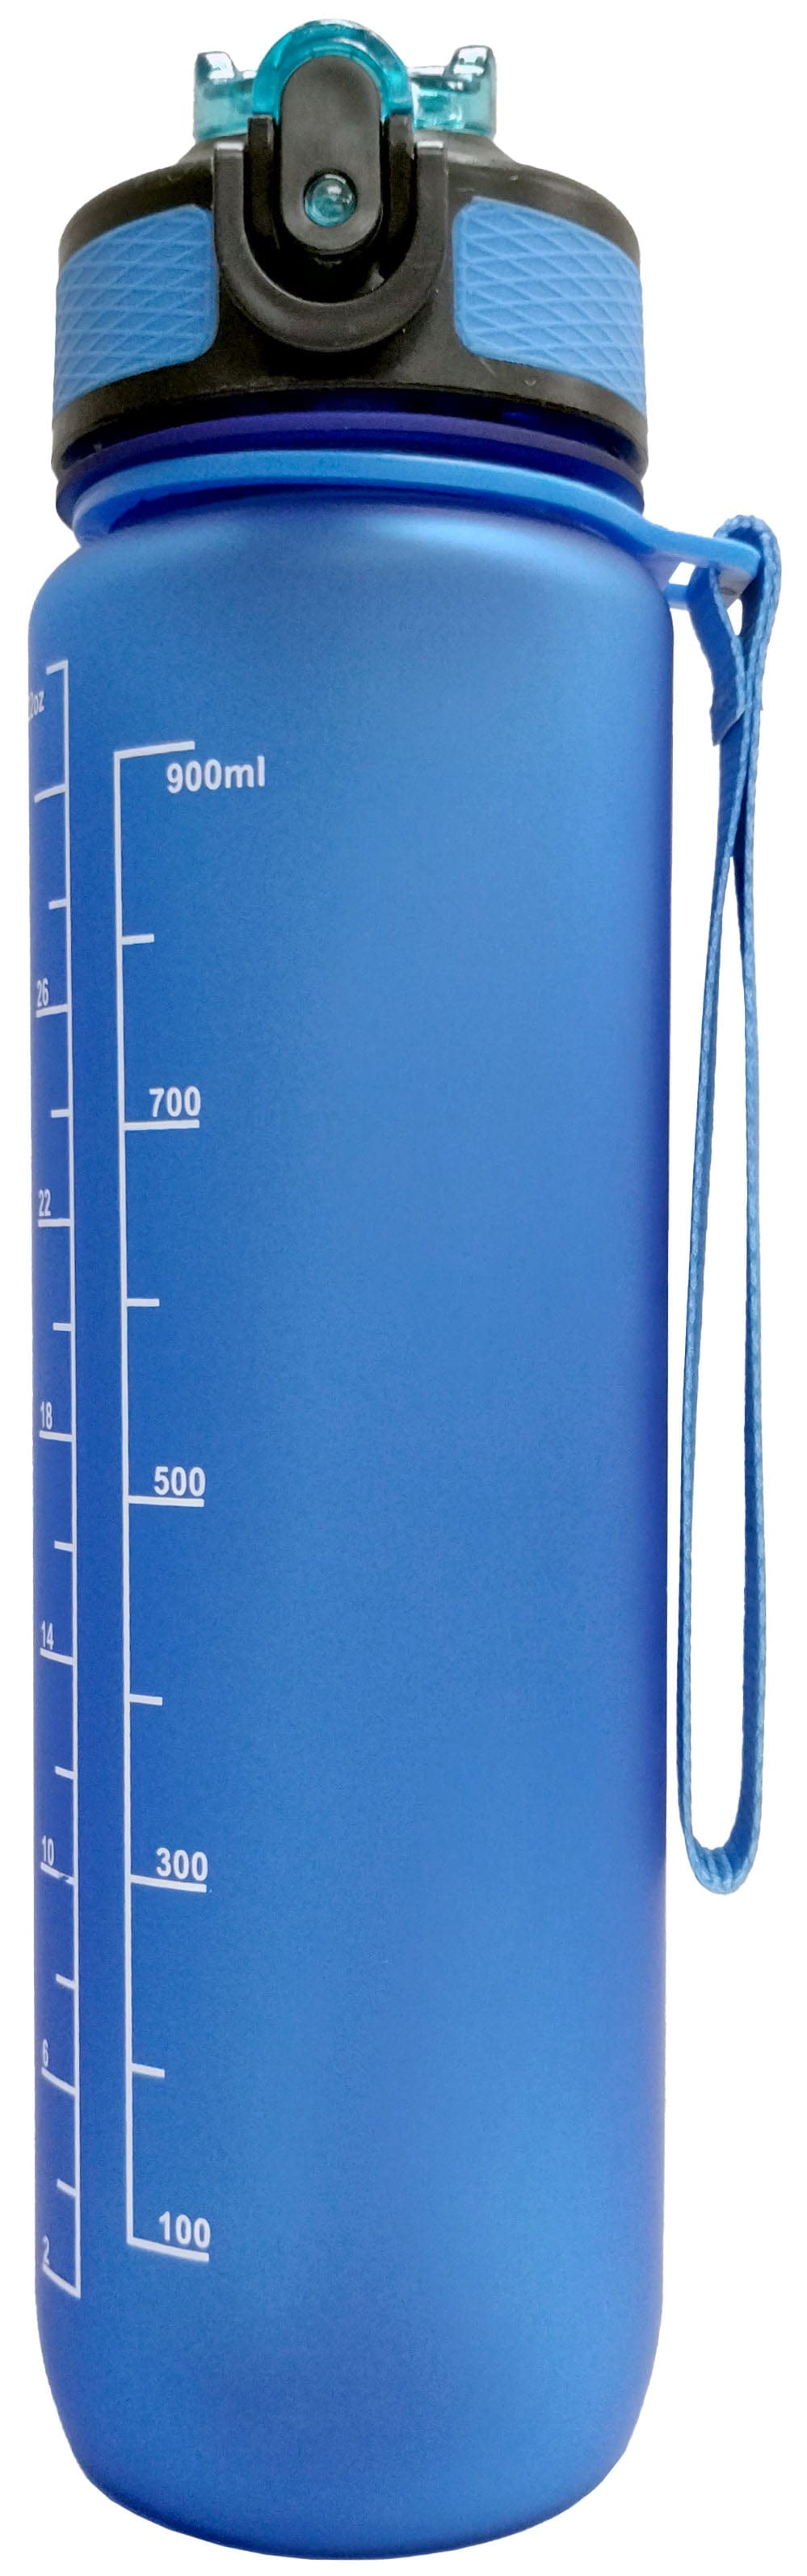 LOVELY PLANET Épicerie Bouteille d'eau réutilisable graduée (bleue)  900ml